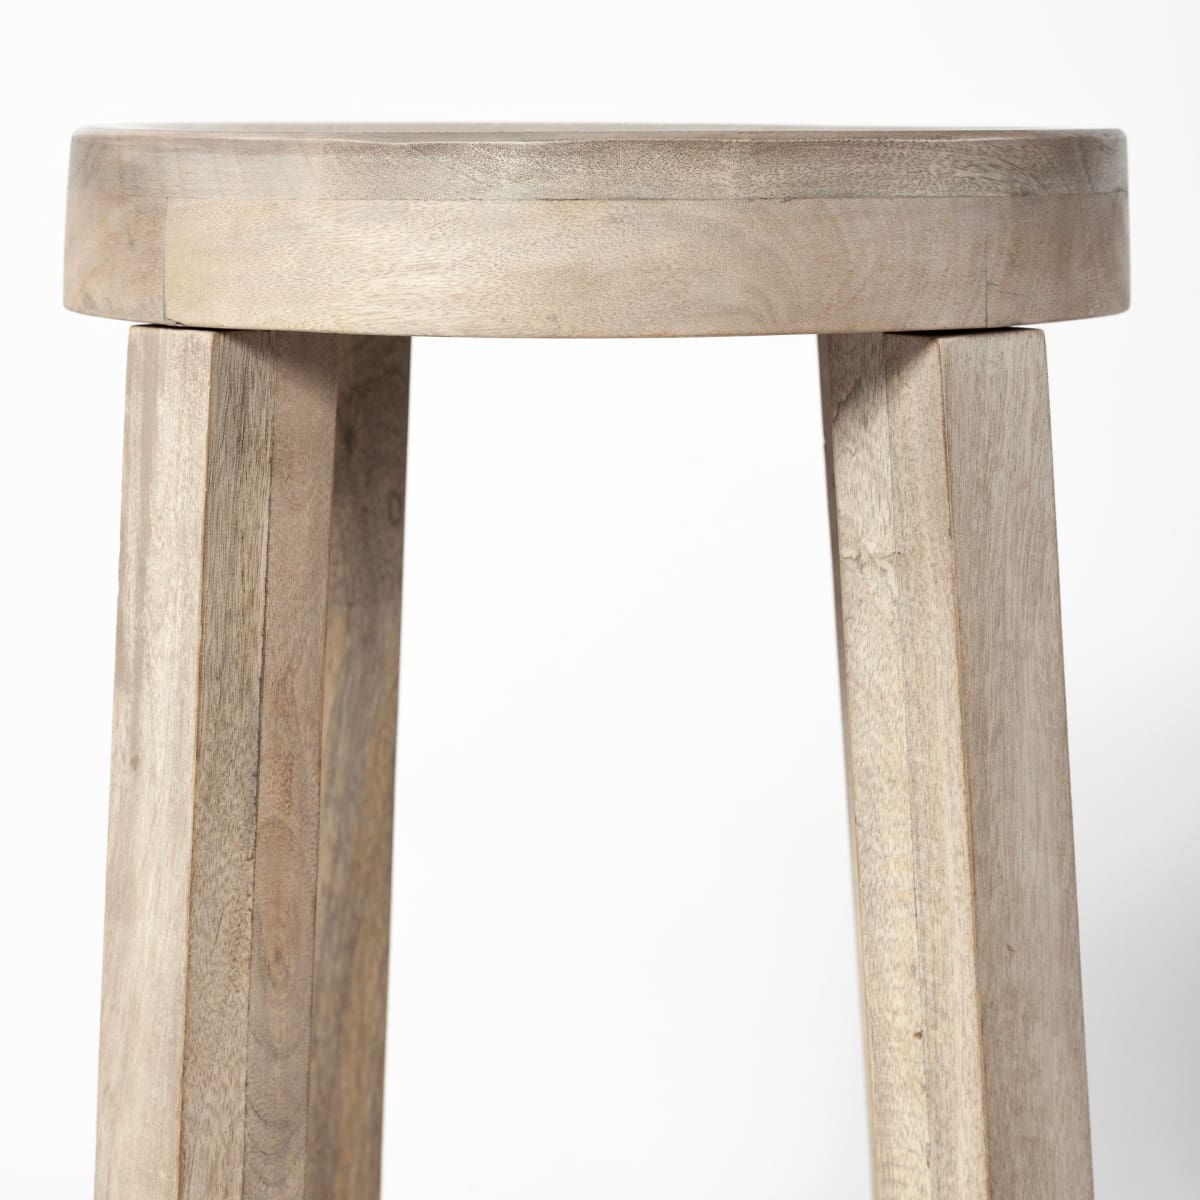 Brahma Bar Counter Stool White Washed Wood - bar-stools